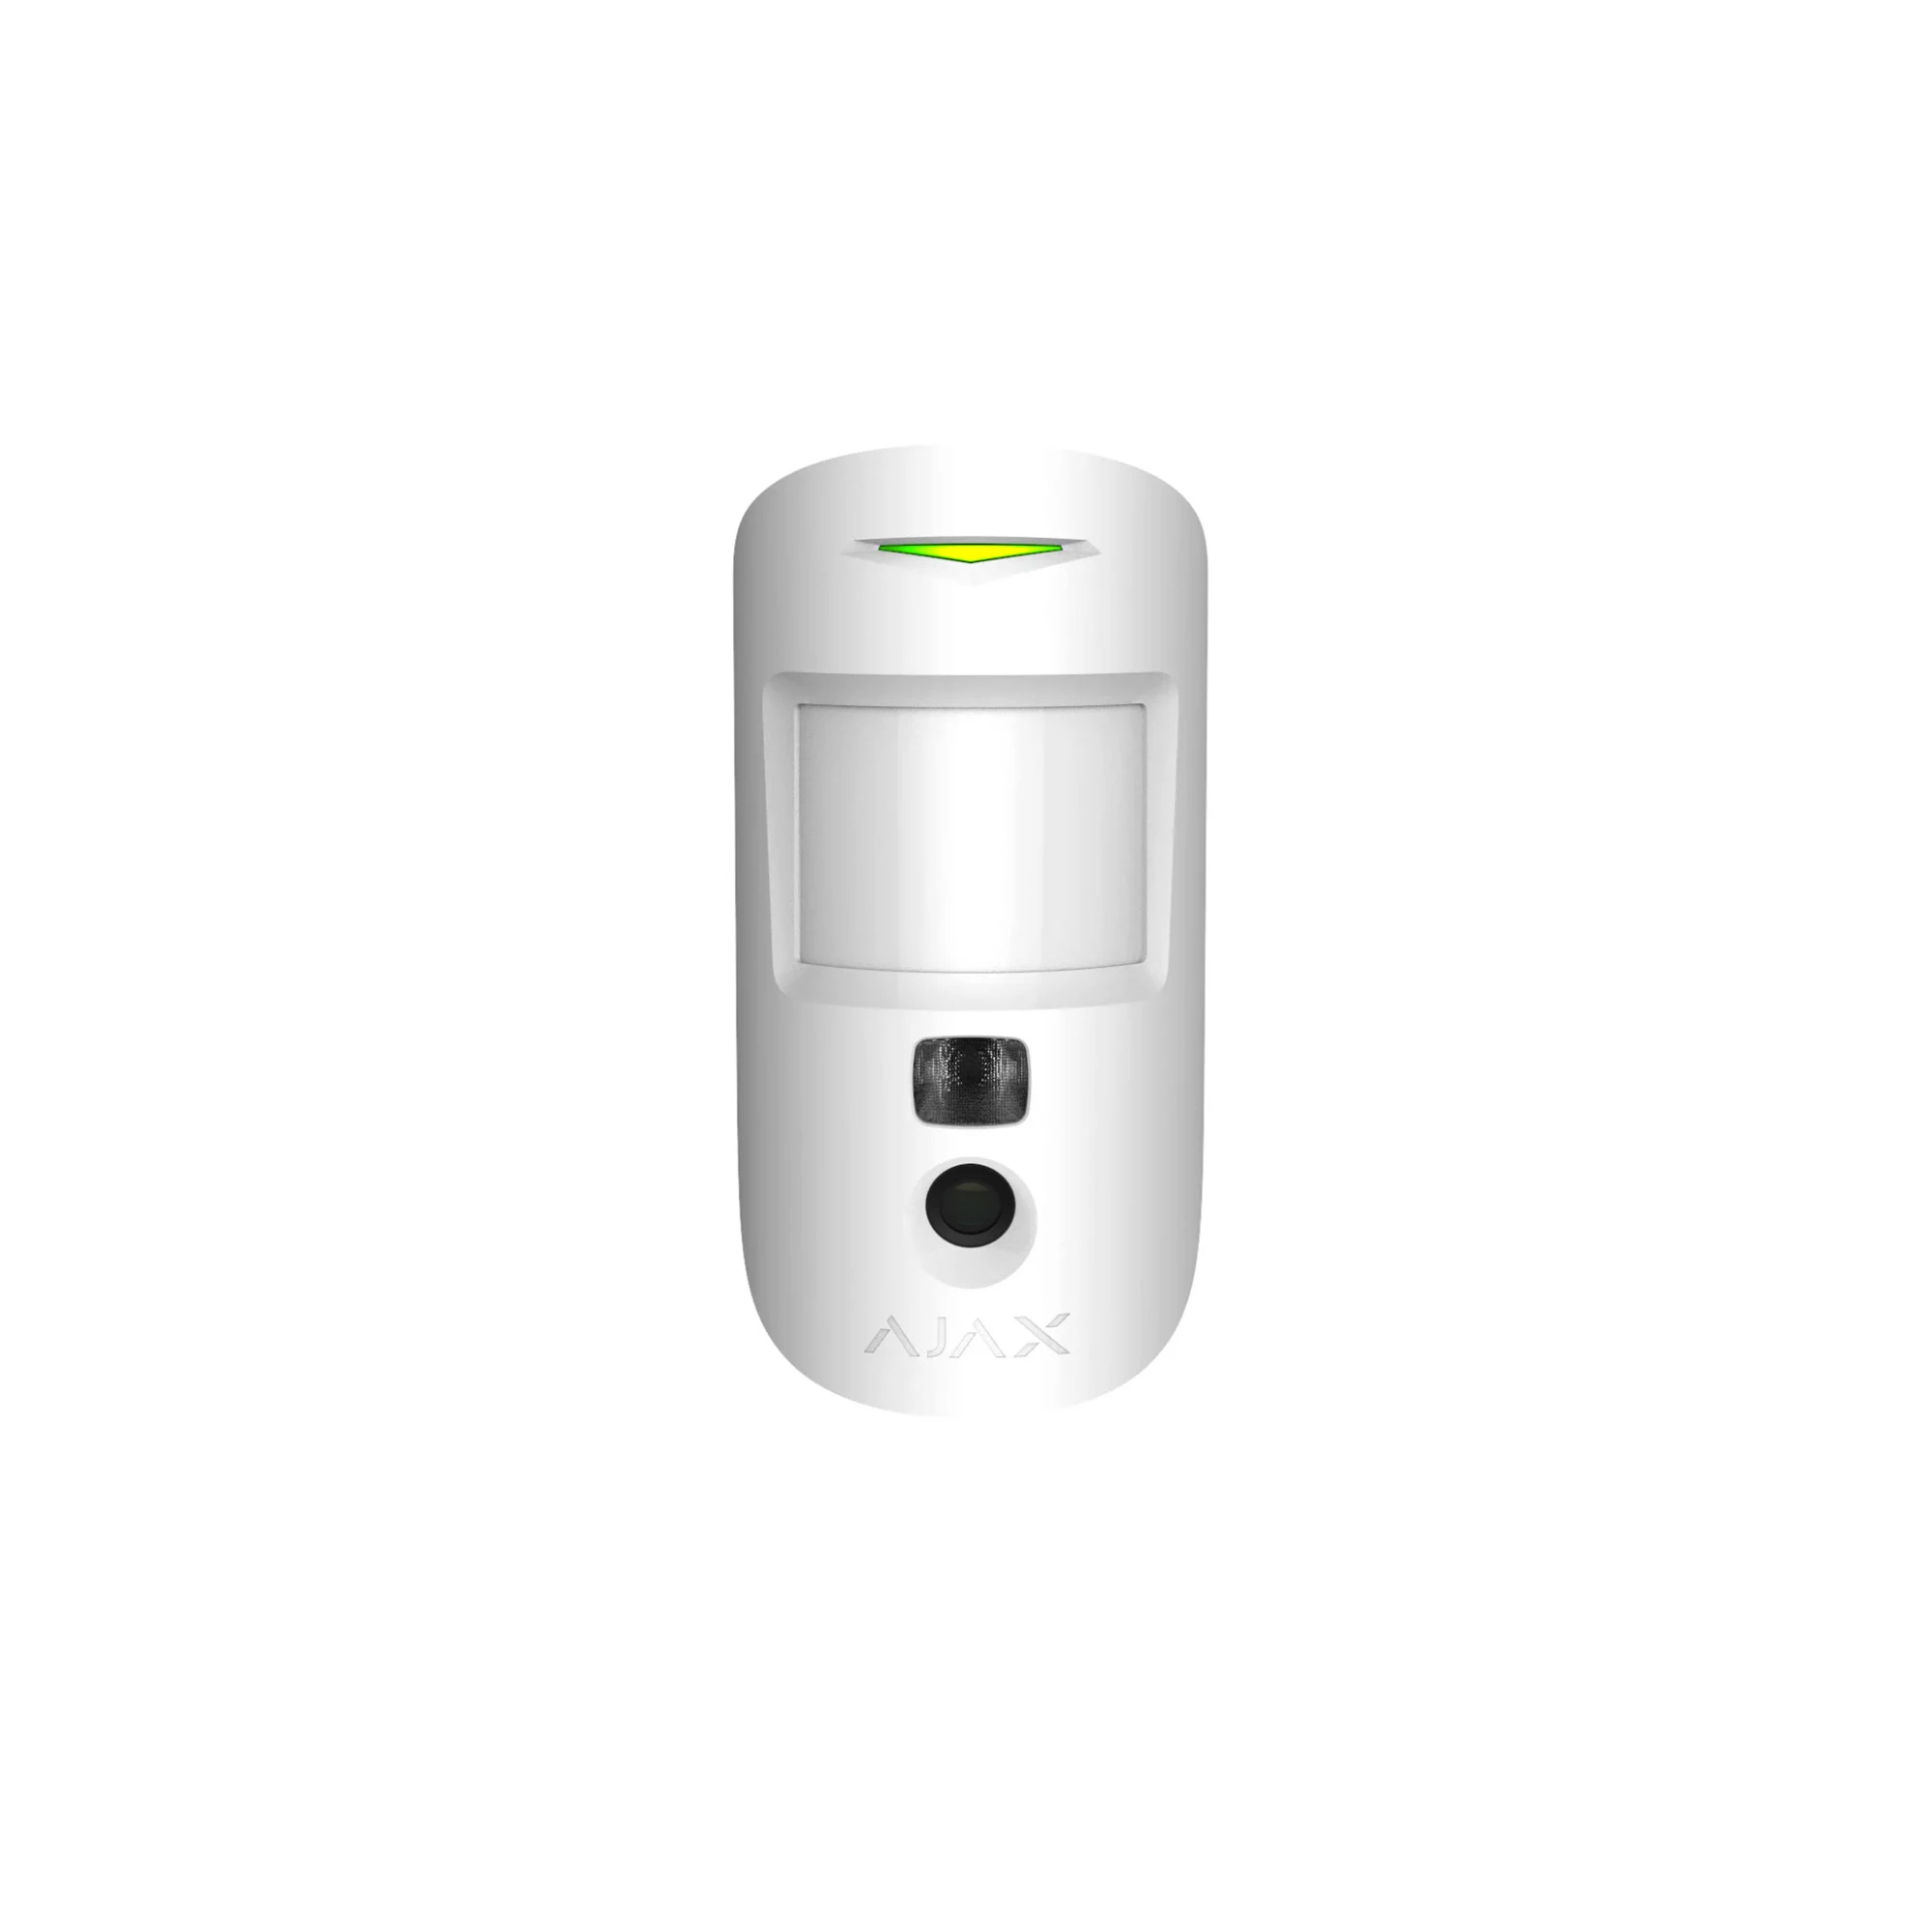 Ajax MotionCam White - беспроводной датчик движения с фотокамерой для верификации тревог